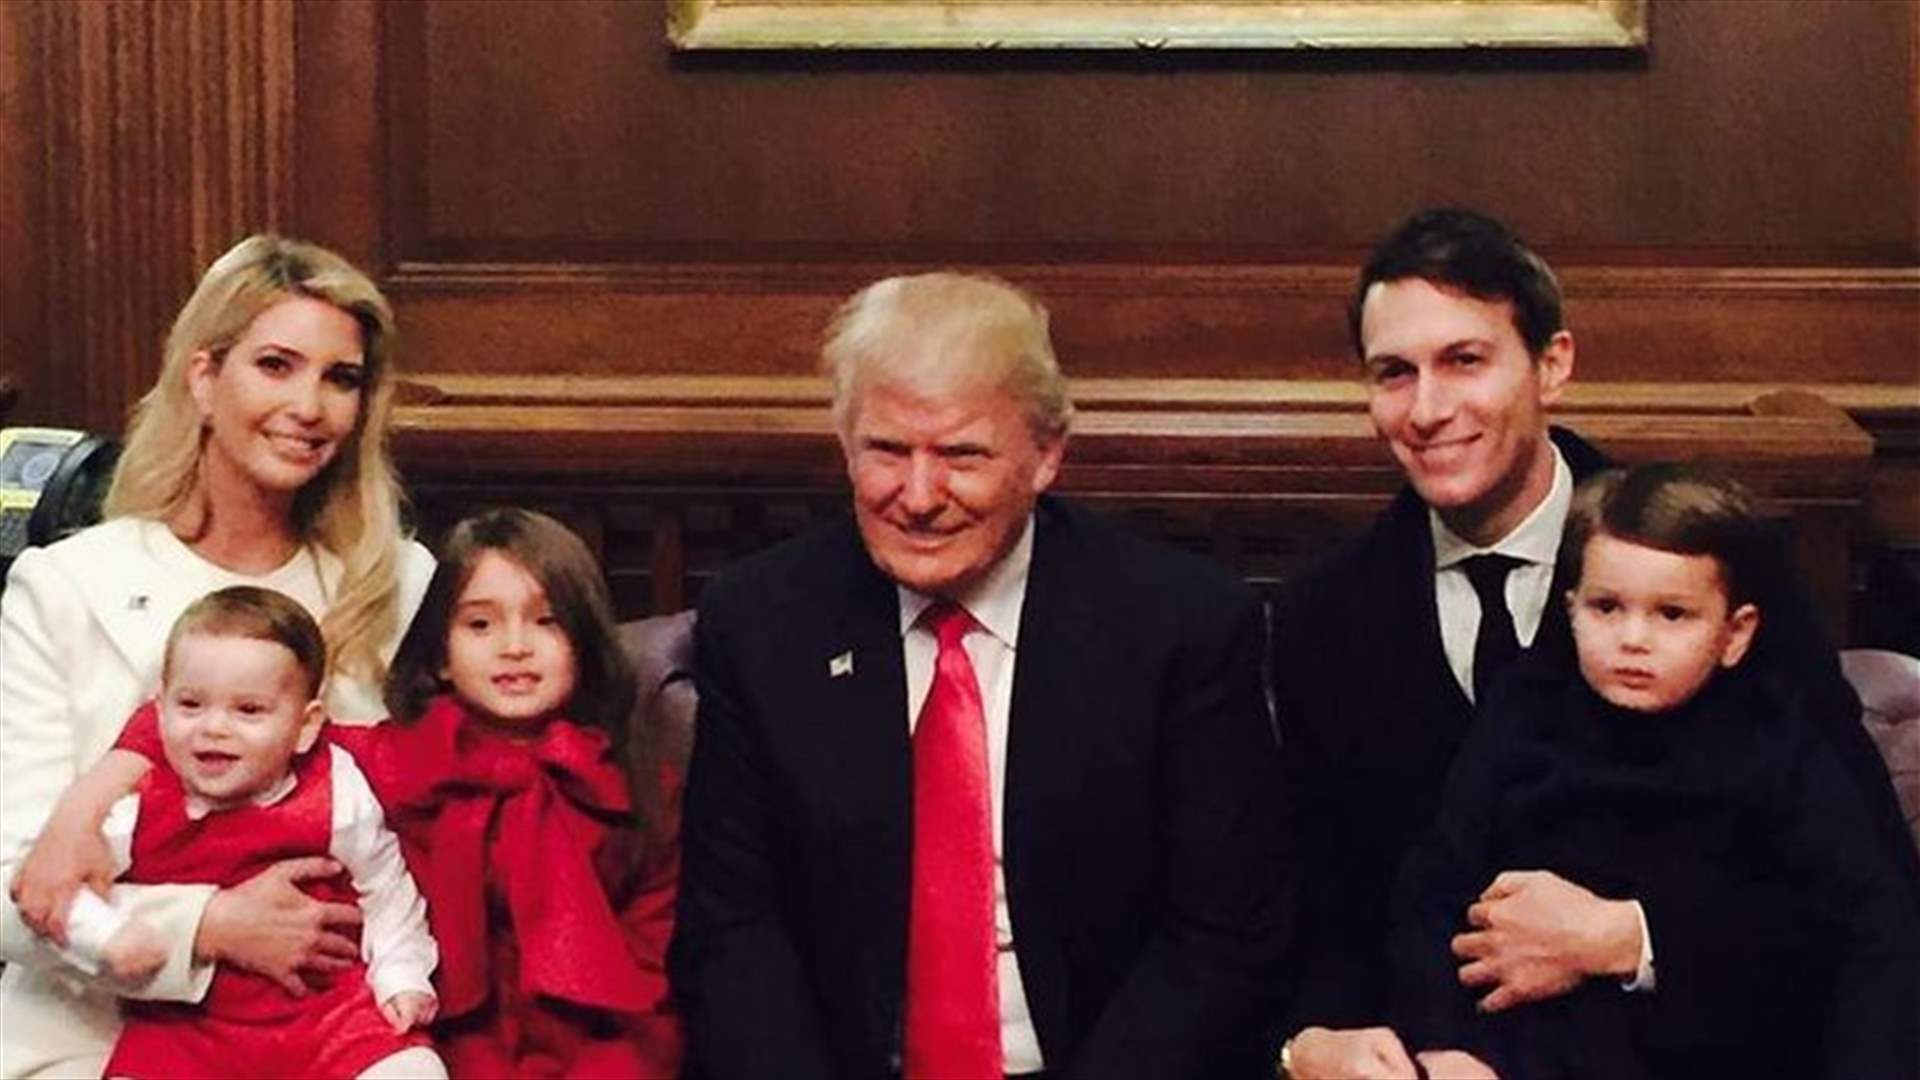 صور إيفانكا ترامب مع عائلتها تعرّضها لحملةٍ انتقاداتٍ واسعة... بسبب والدها